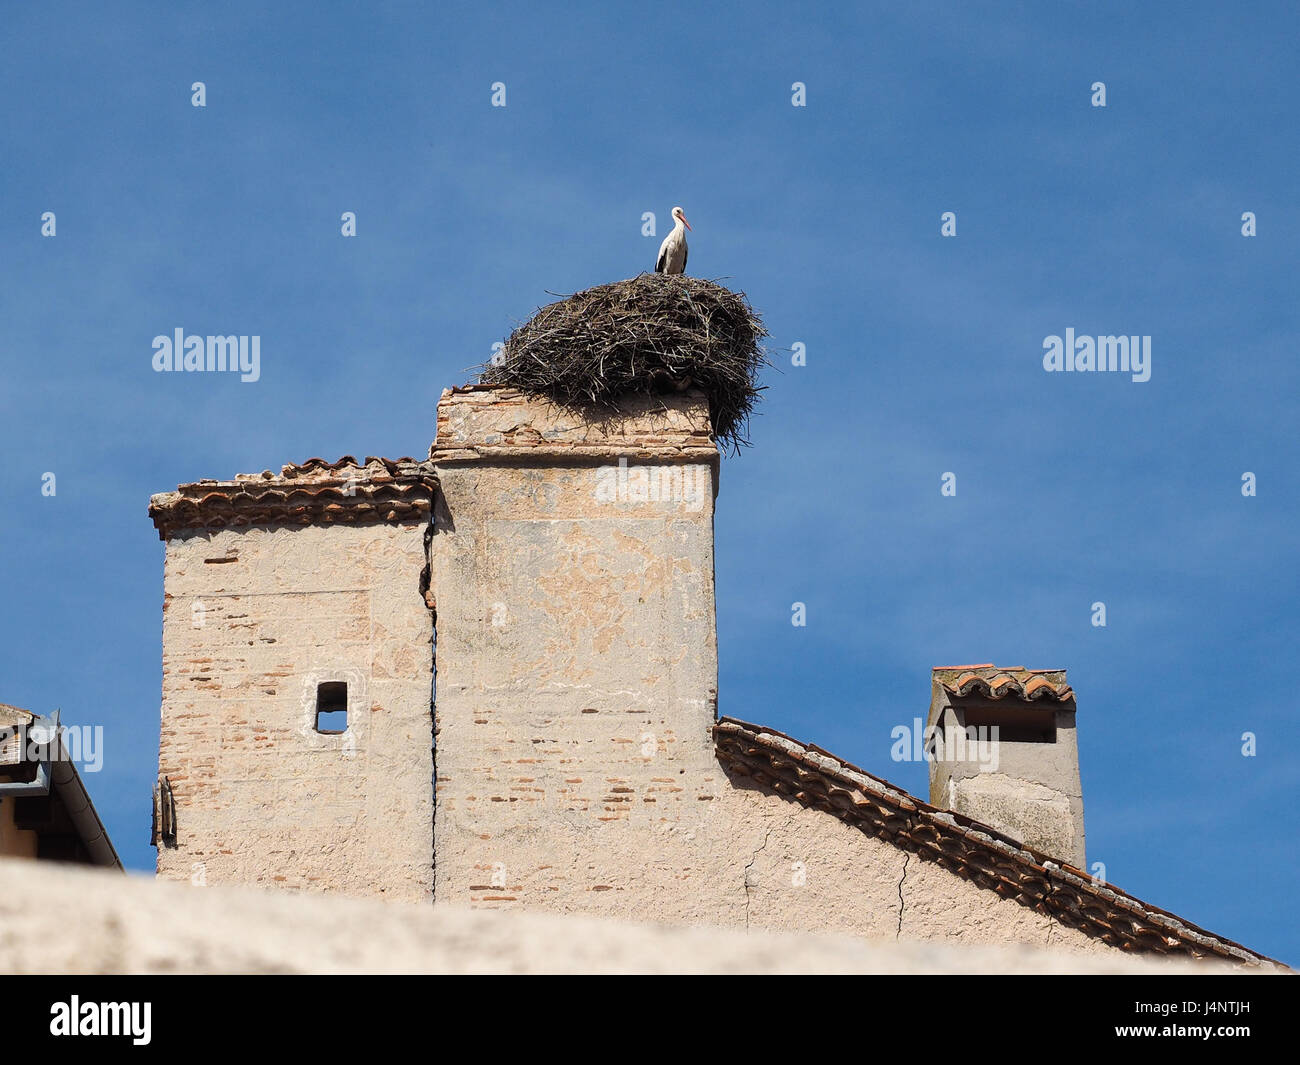 Ein Stiel Profil auf Nest nisten in einem Schornstein auf dem obersten Fliesen Fliesen Dach Dach eines spanischen Haus Giebel in Segovia Spanien sitzen Stockfoto